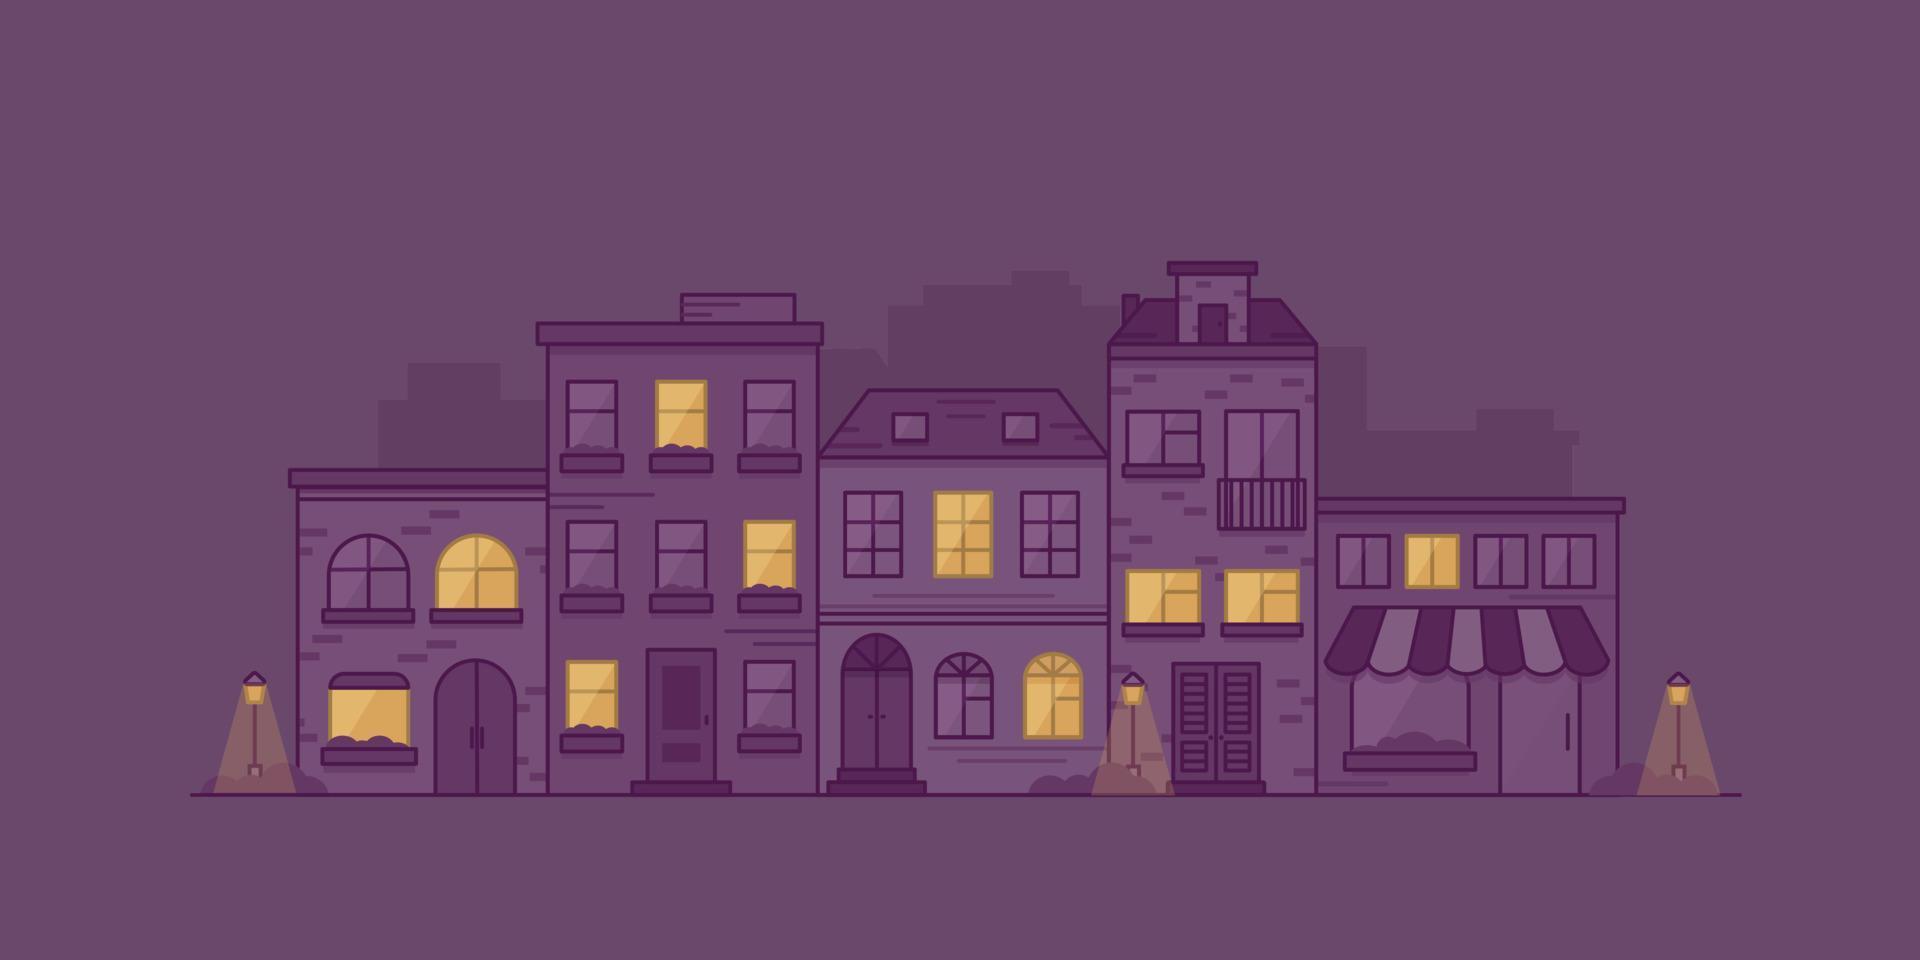 stadsgezicht met herenhuizen, lantaarns en struiken 's nachts. stadsstraat met gevels van gebouwen. vectorillustratie in lineaire stijl. vector